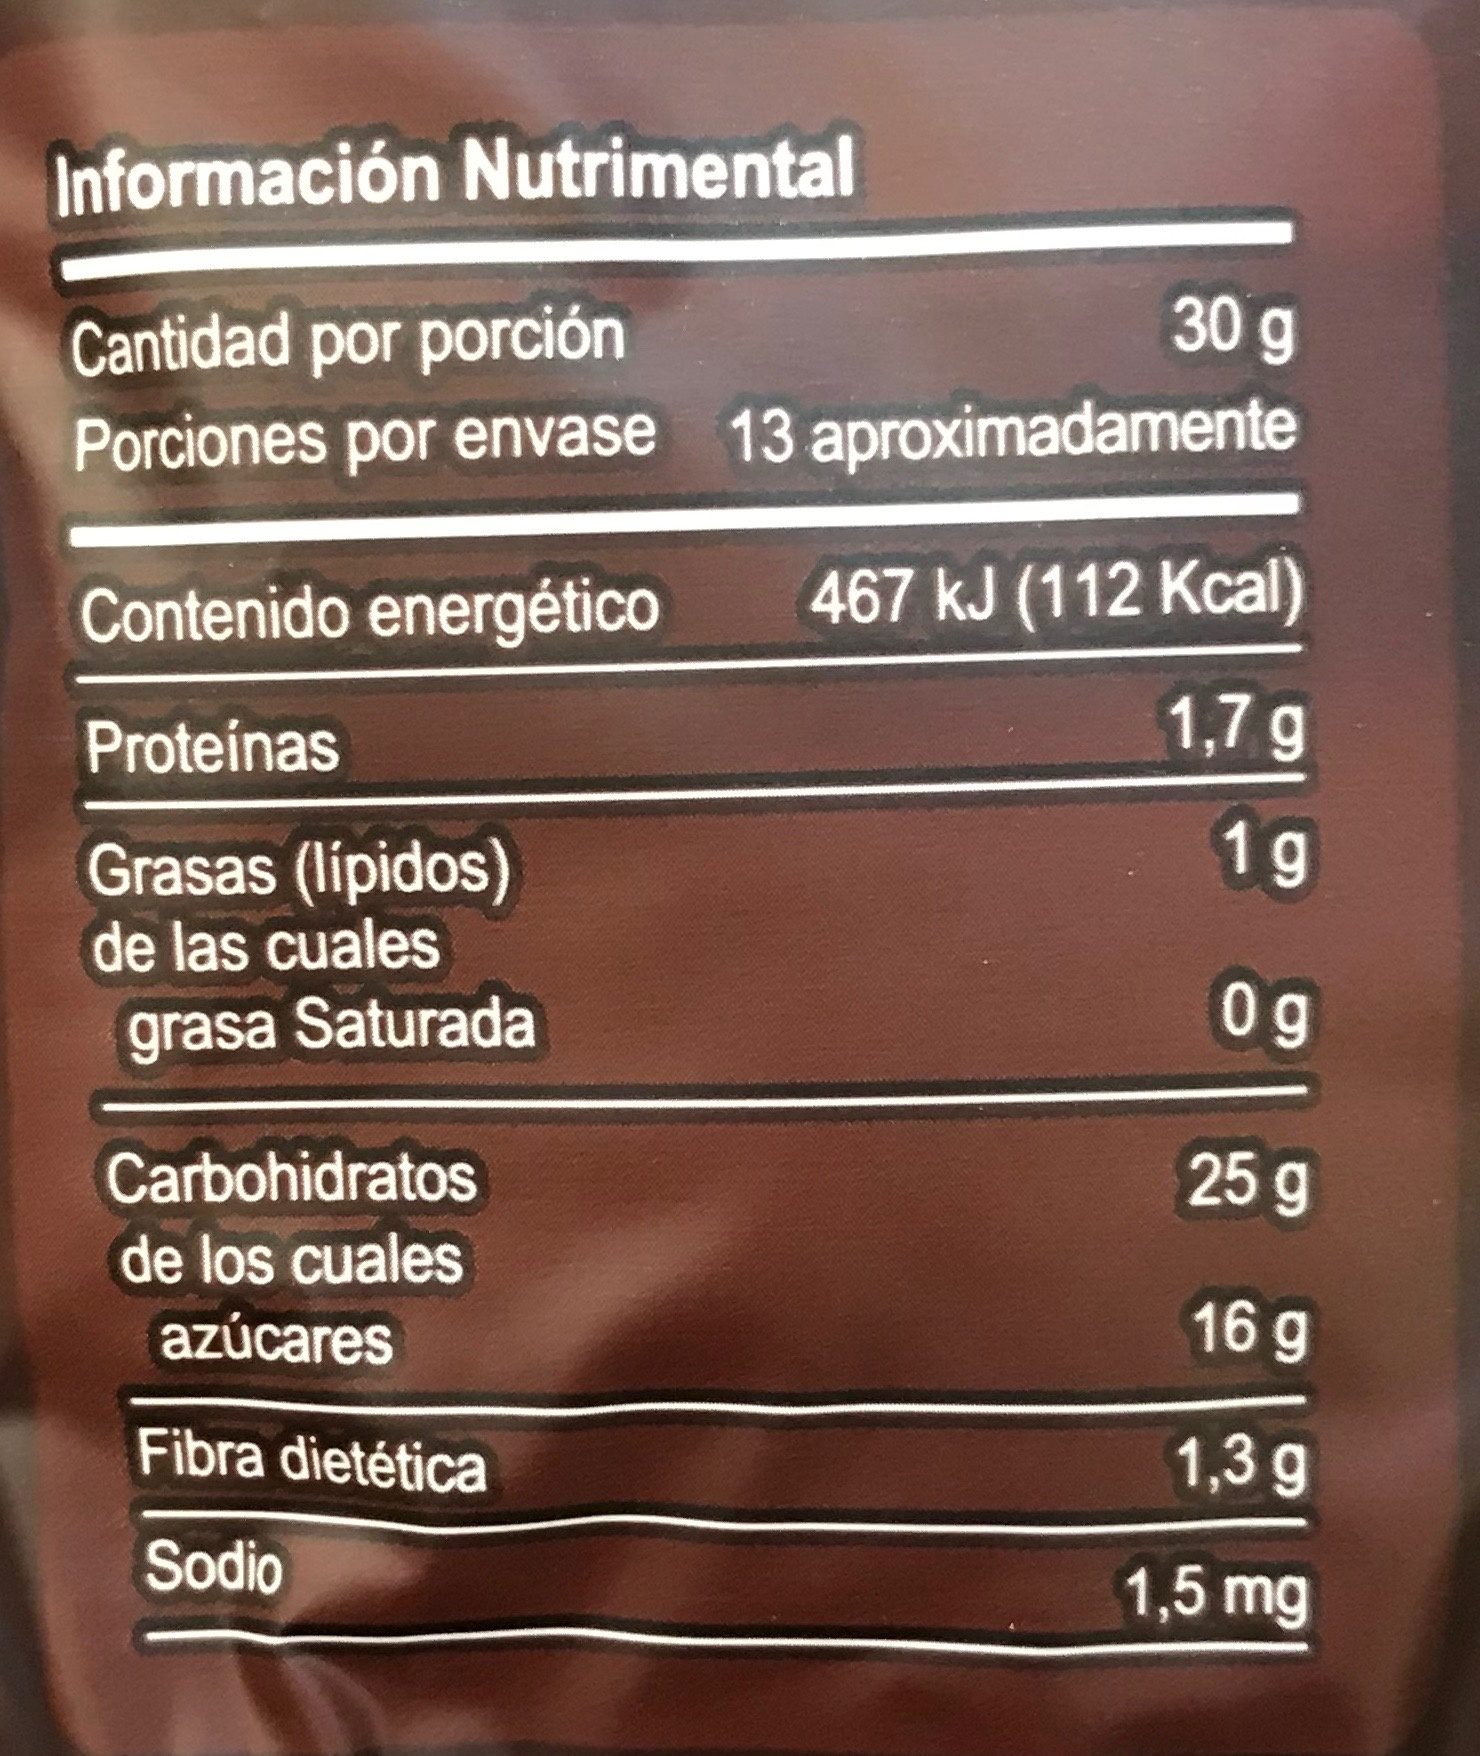 Polvo para preparar bebida de avena sabor chocolate - Información nutricional